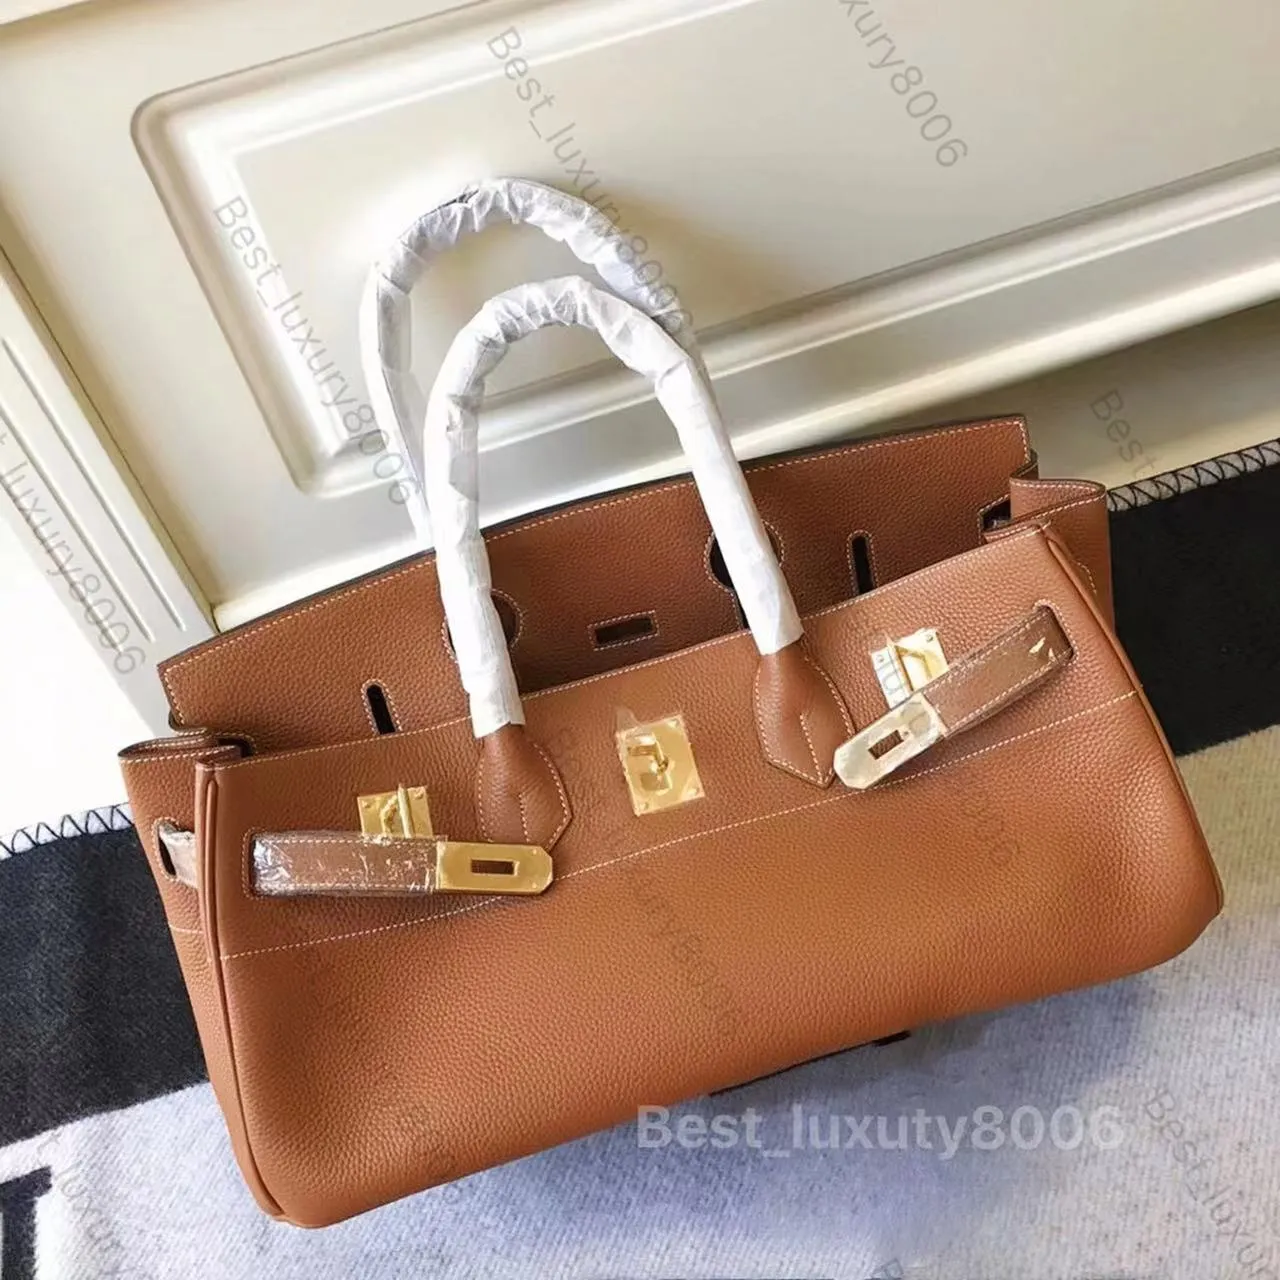 Дизайнерская сумка Luxury Tote Классическая брендовая сумка 42 см из импортной кожи, французская нить из пчелиного воска, полуручная работа, модная сумка с позолоченной фурнитурой 22 карата